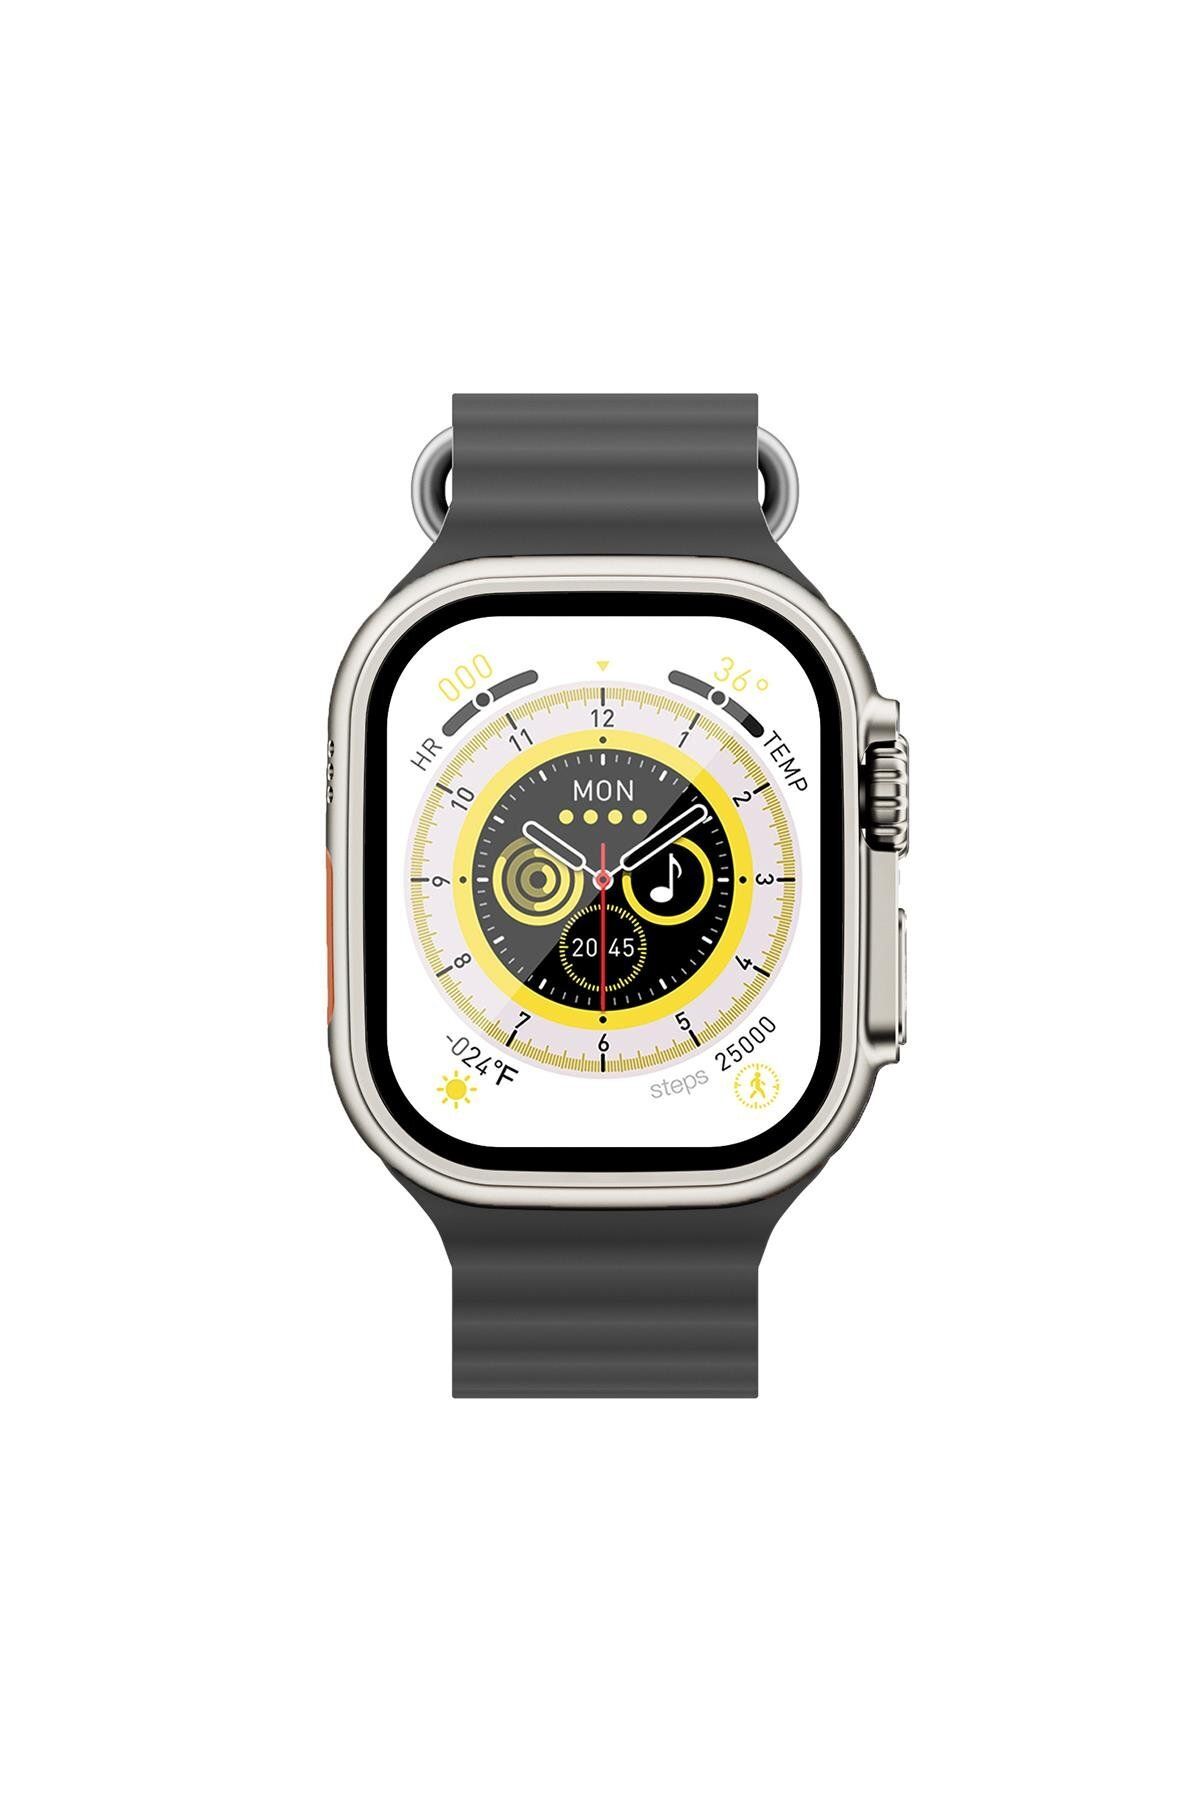 Prestijshop Watch 8 Ultra 2+ Süper Amoled Ekranlı Özellikli Akıllı Saat 2024 Android Ios Uyumlu Akıllı Bileklik